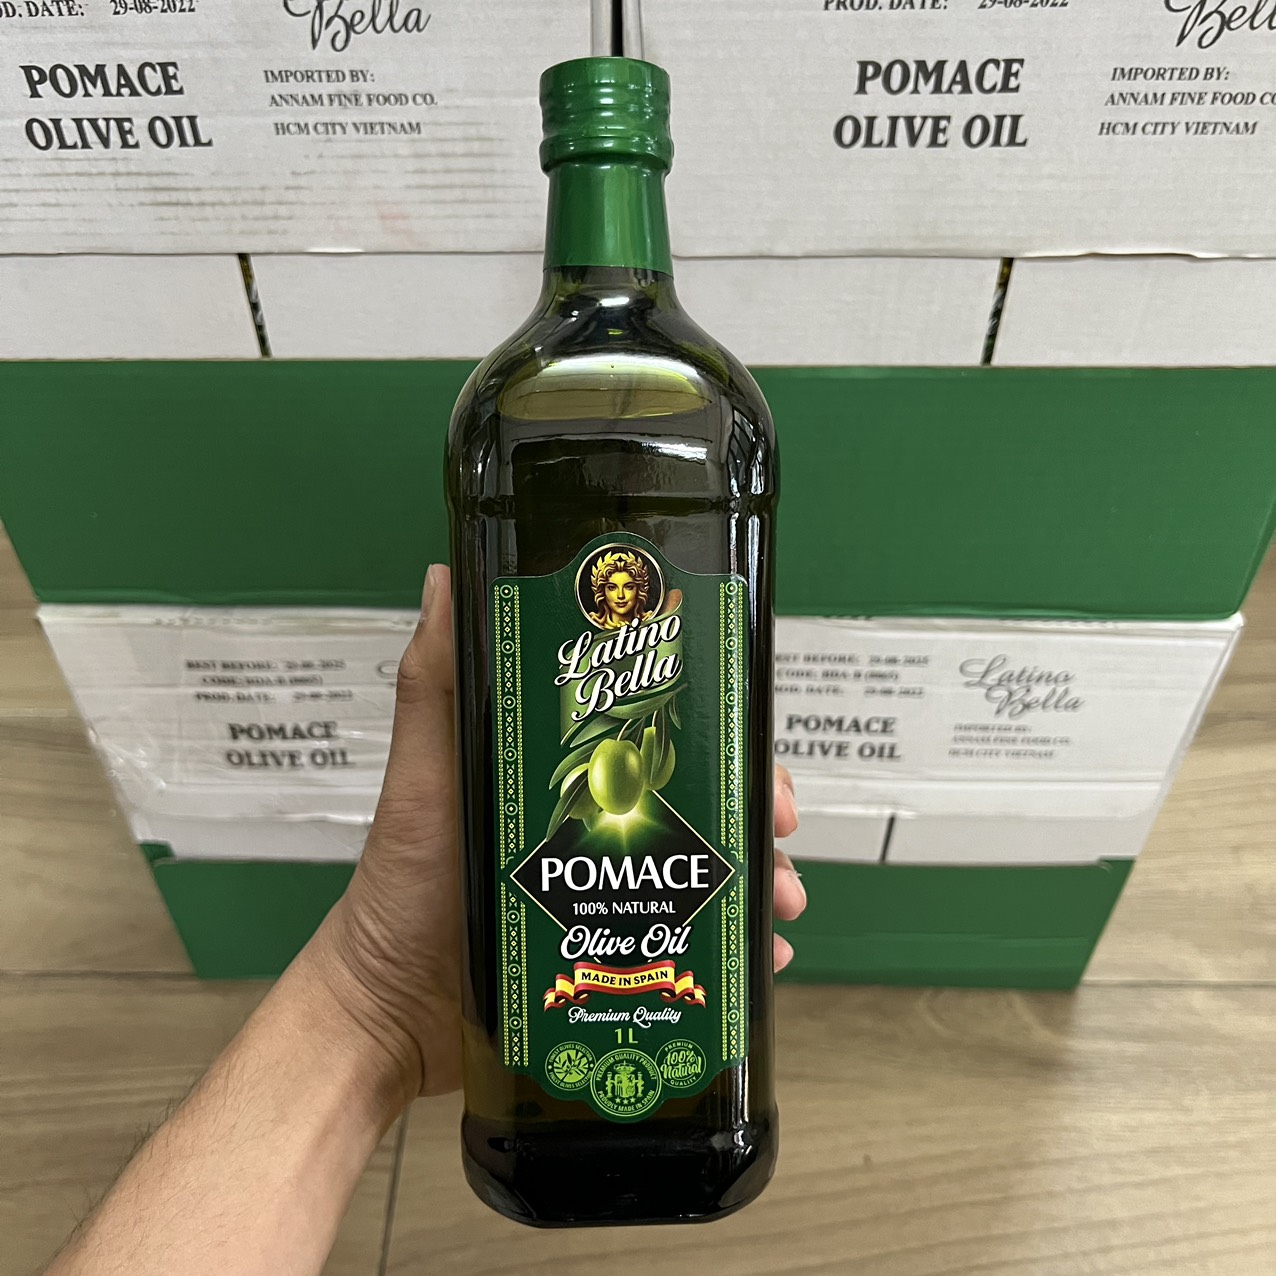 Dầu olive Pomace 1 lít Latino Bella chính hãng, chai thủy tinh